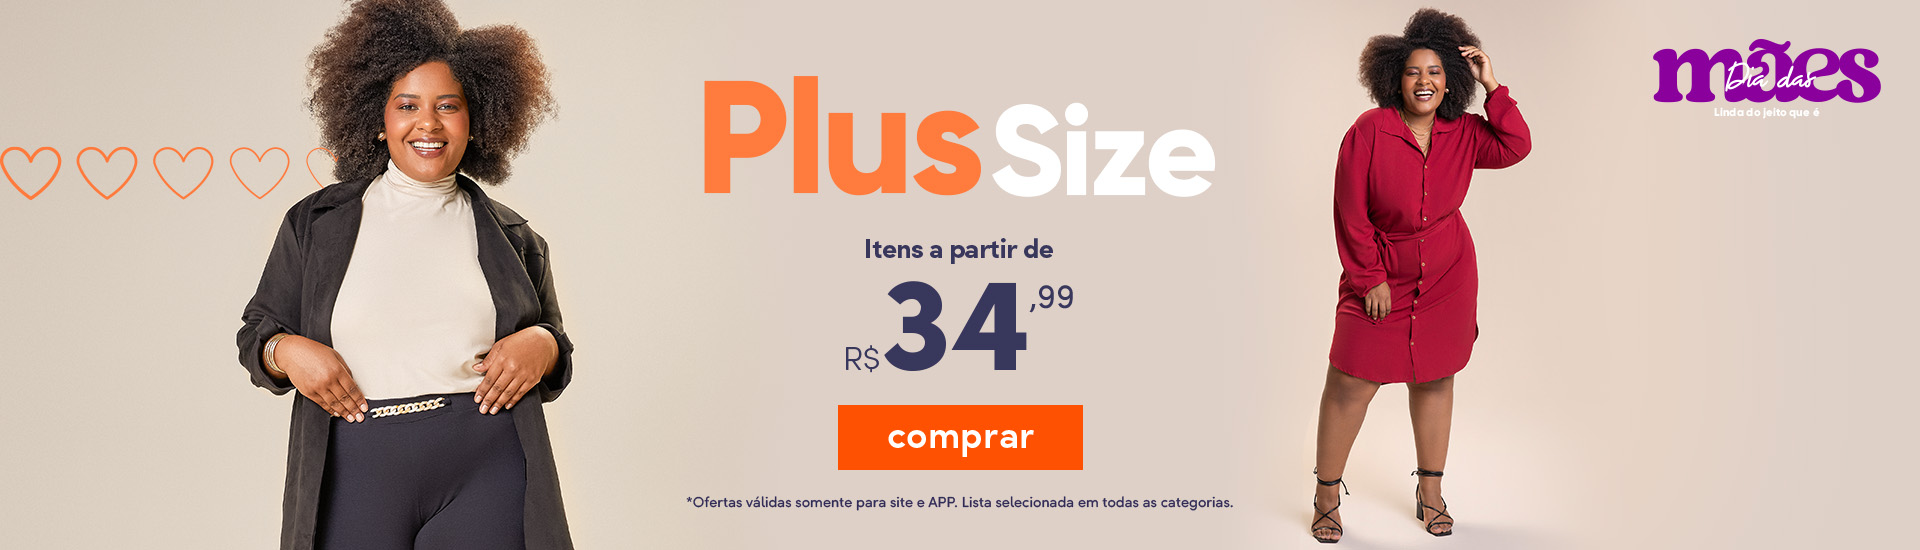  Especial Mães - Plus Size a partir de R$34,99